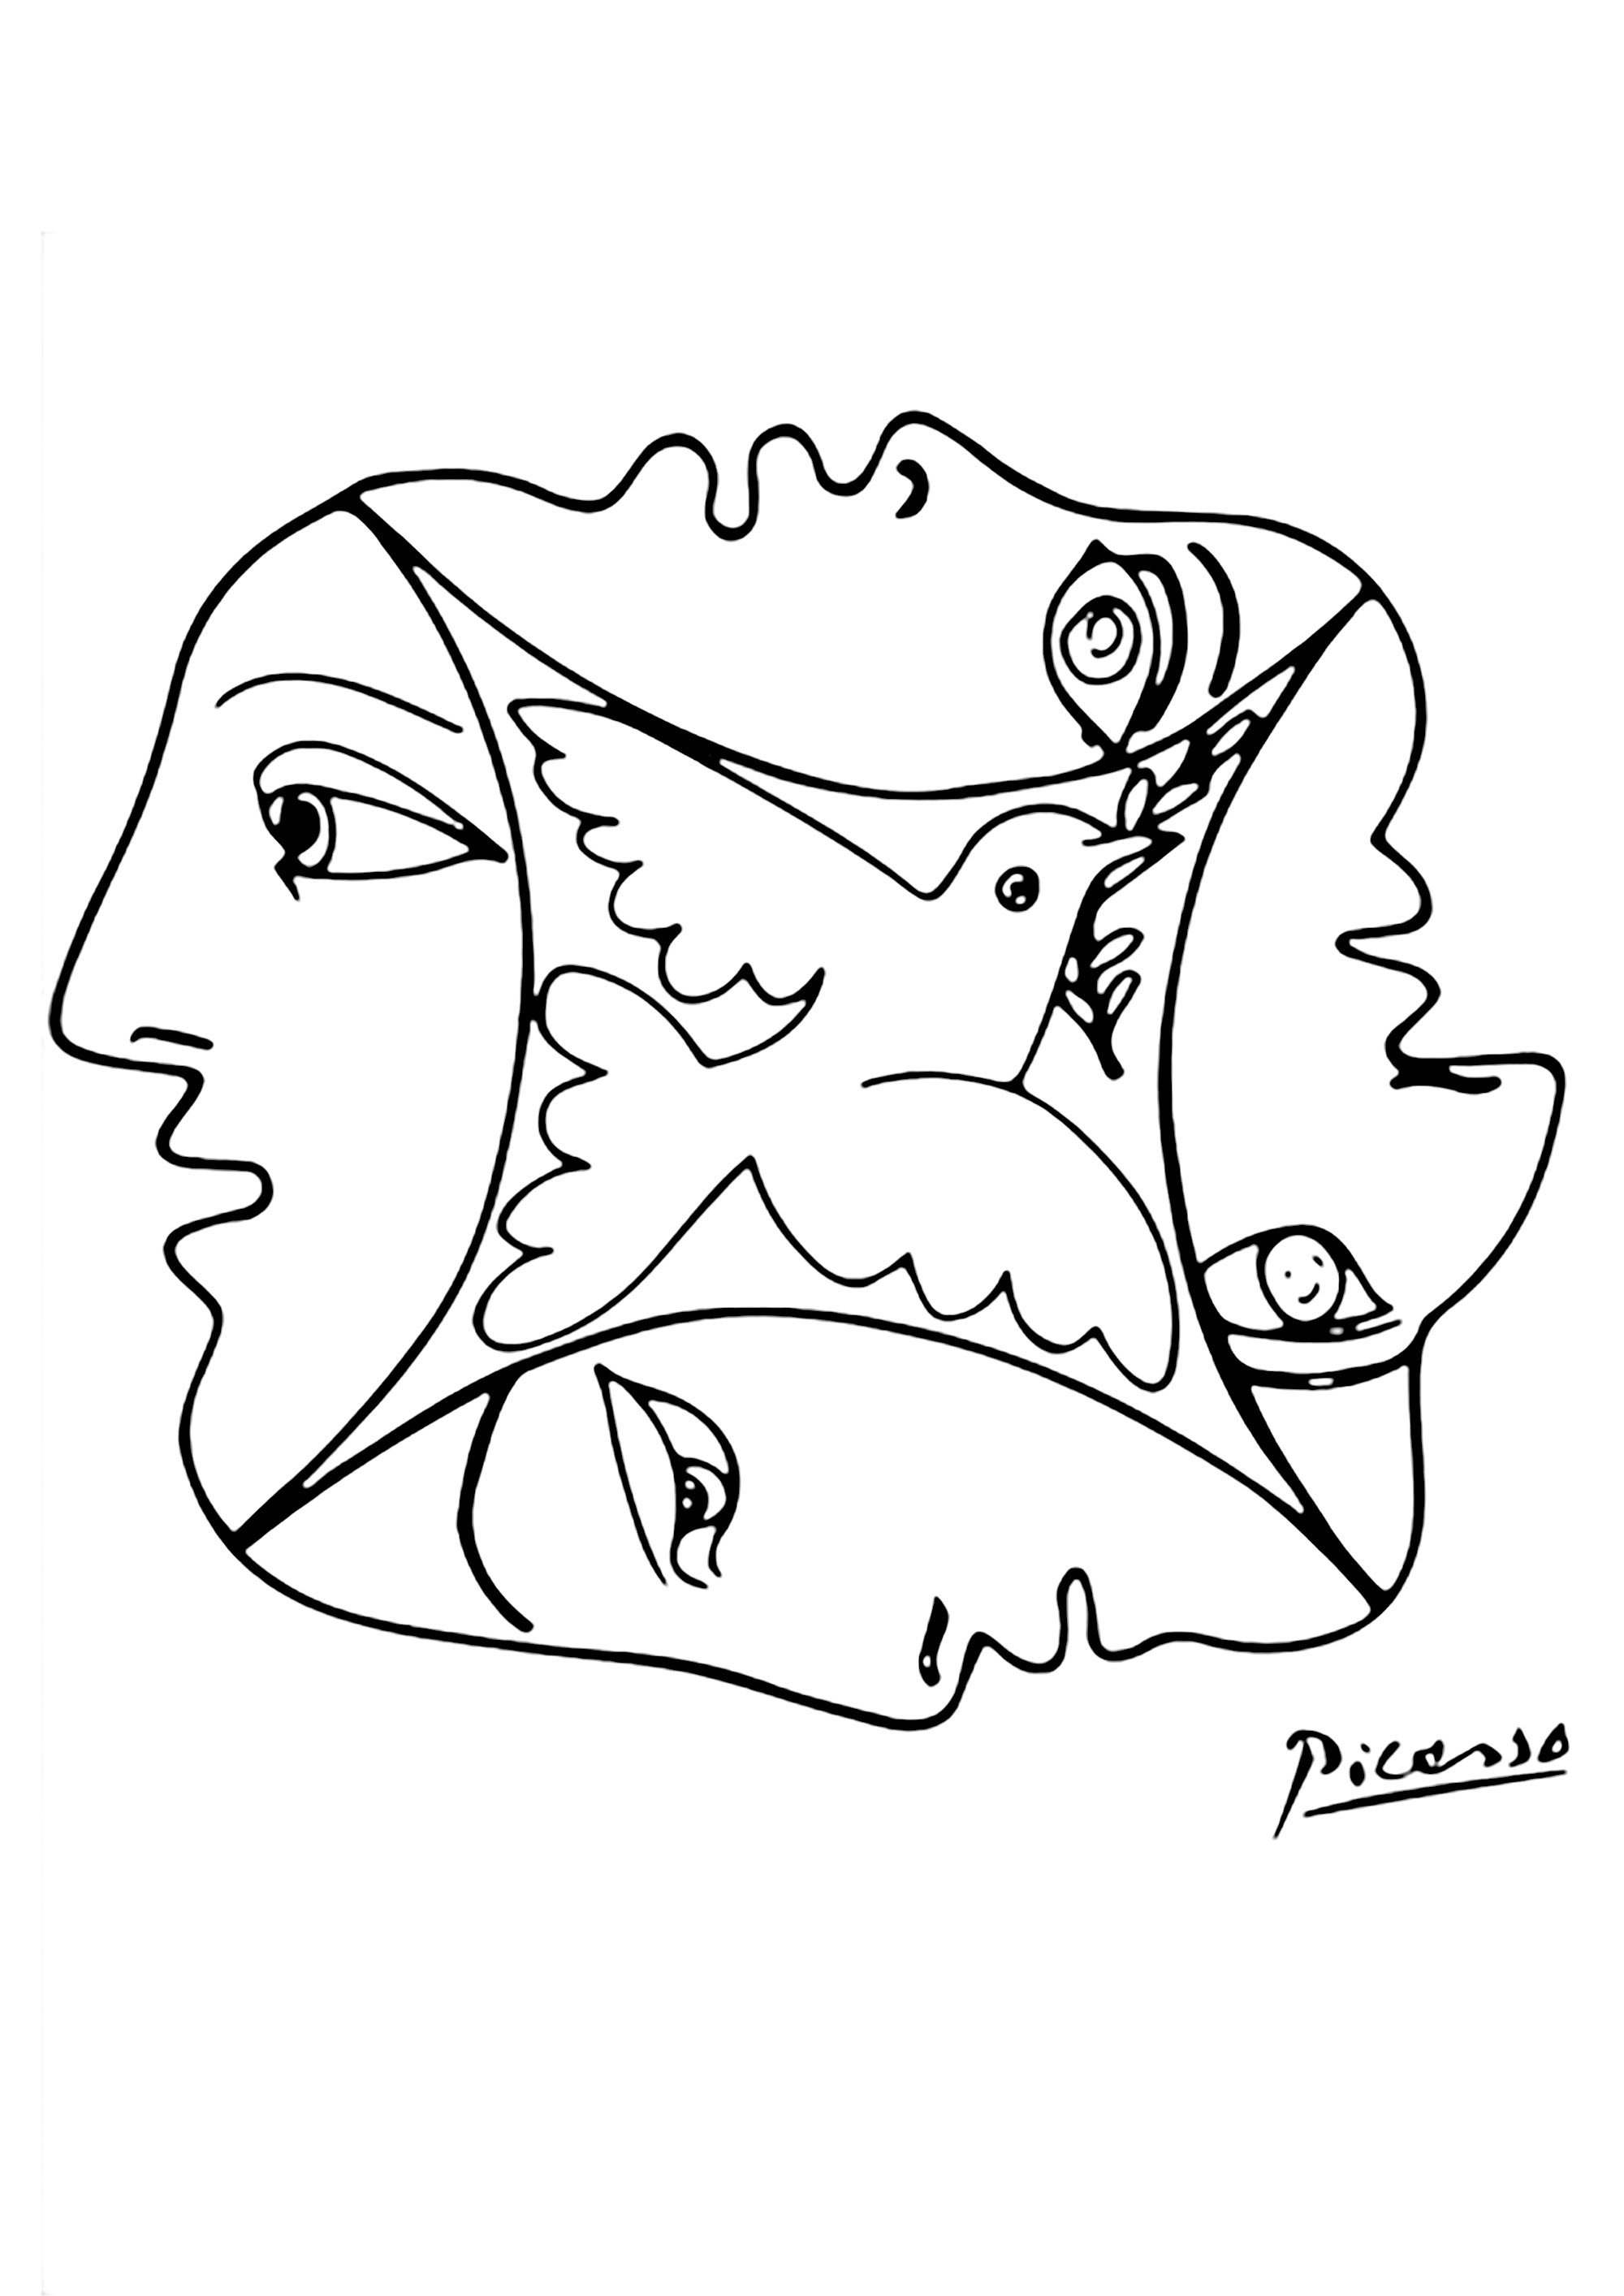 Dessin de Pablo Picasso avec une colombe et des visages. Un dessin représentant la paix et la fraternité